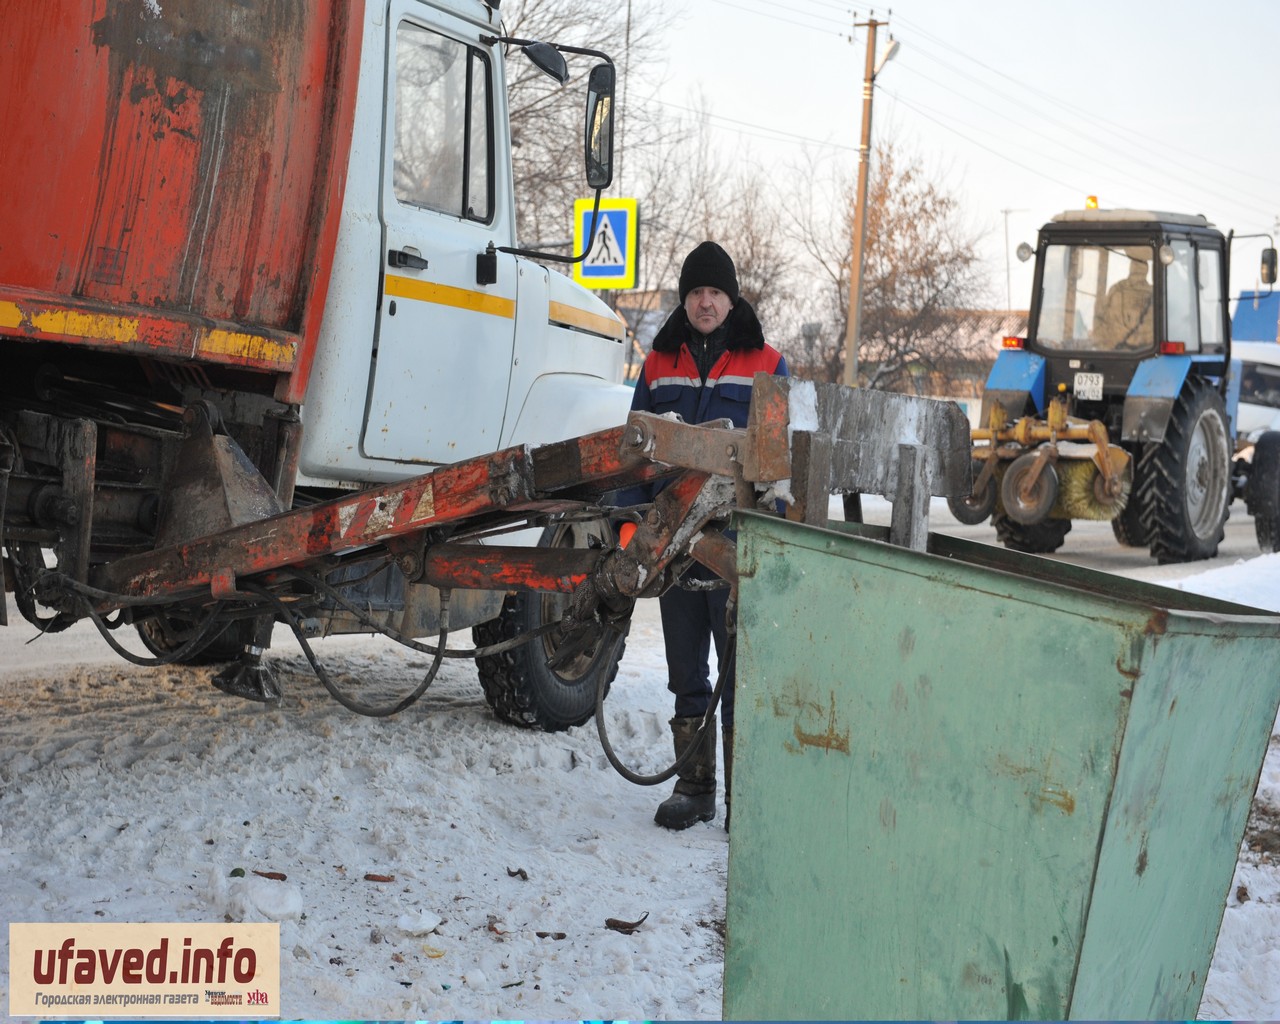 Как проходит "мусорная" реформа в Башкирии?